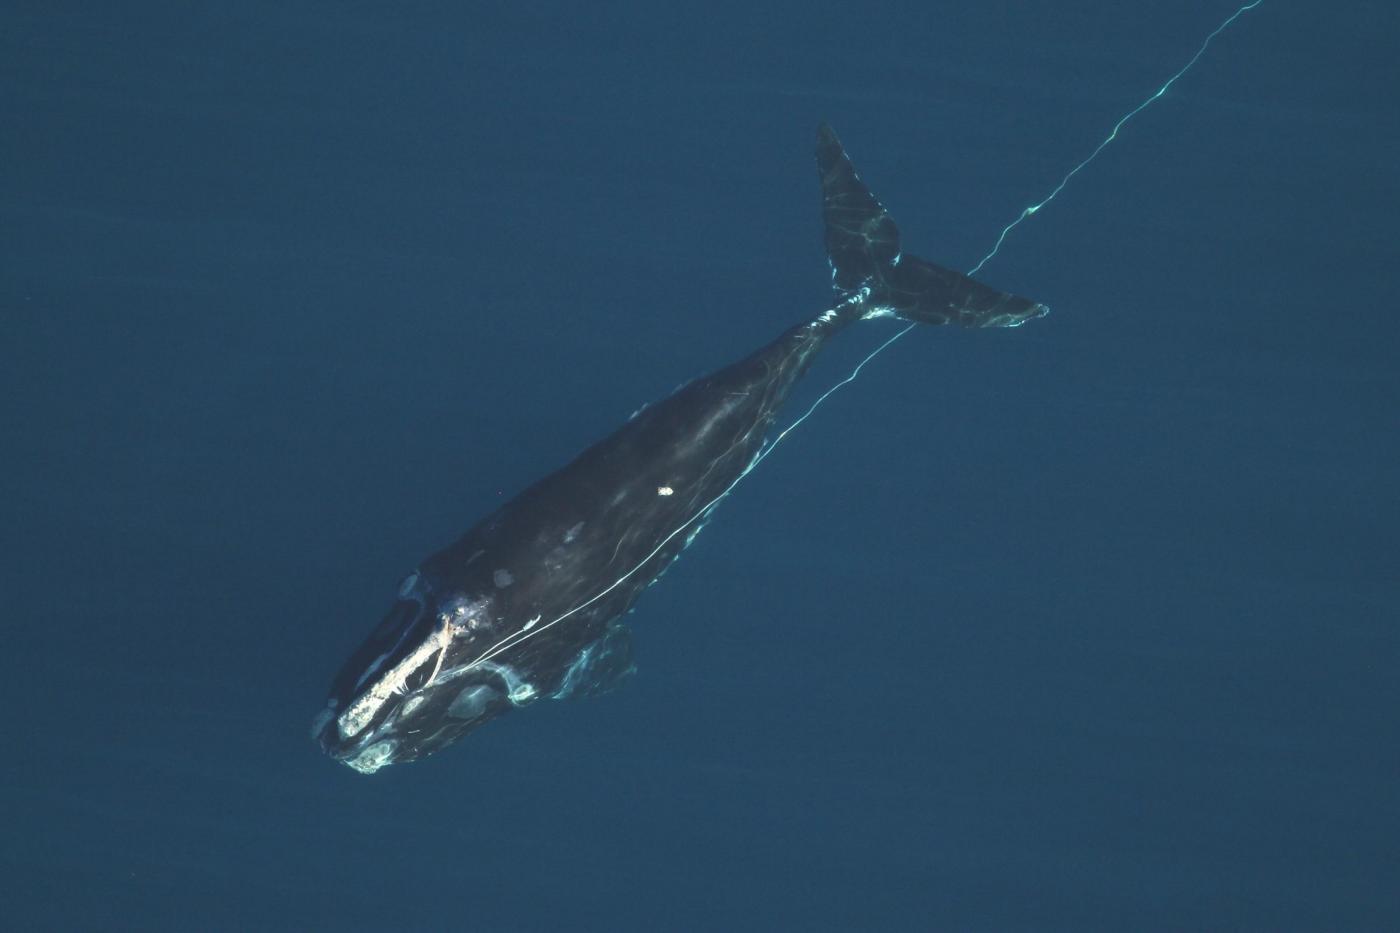 Balene nutrono l’ecosistema degli Oceani: uno studio riabilita i cetacei